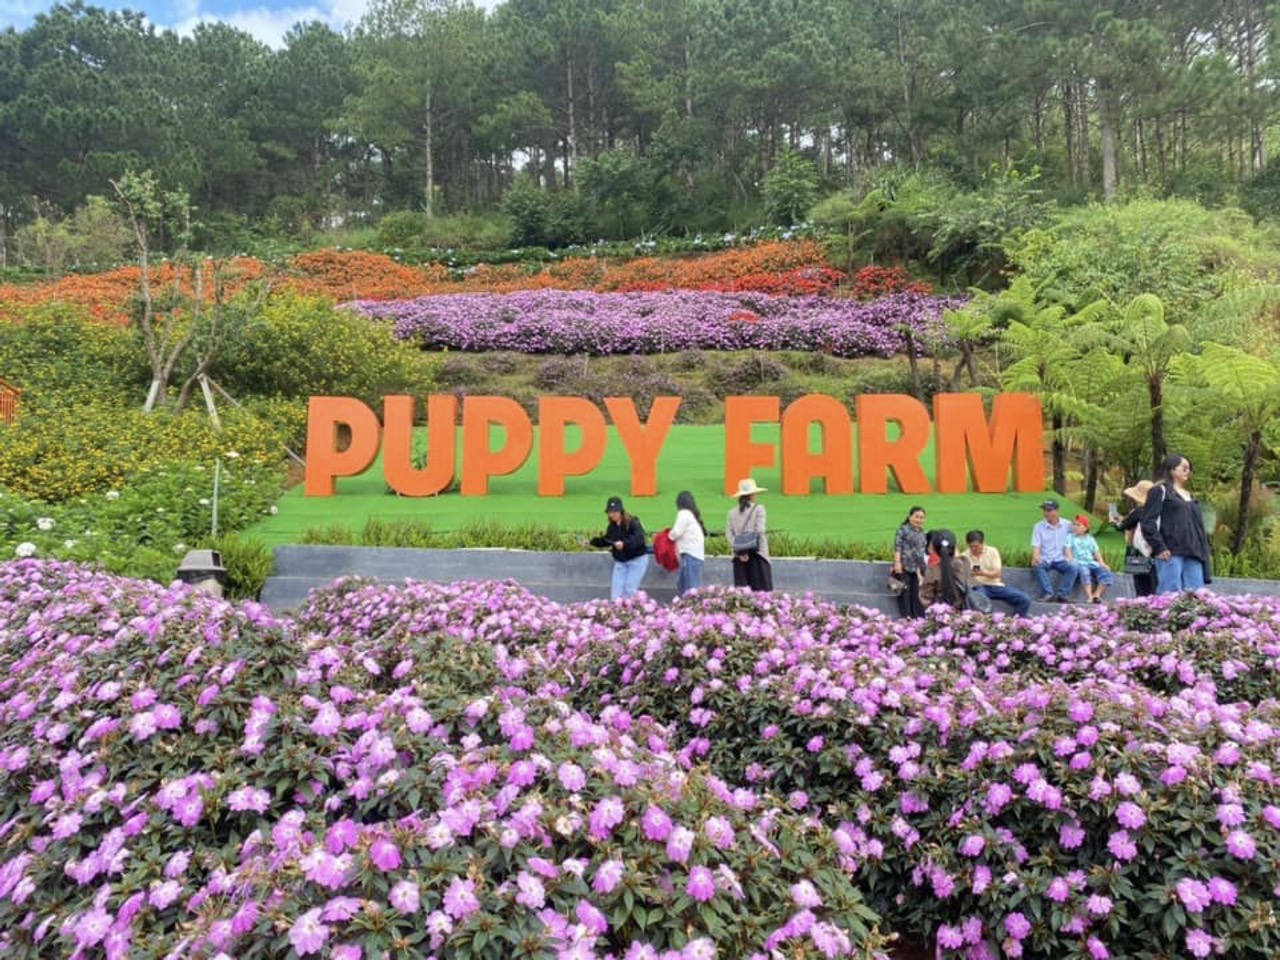 Puppy Farm